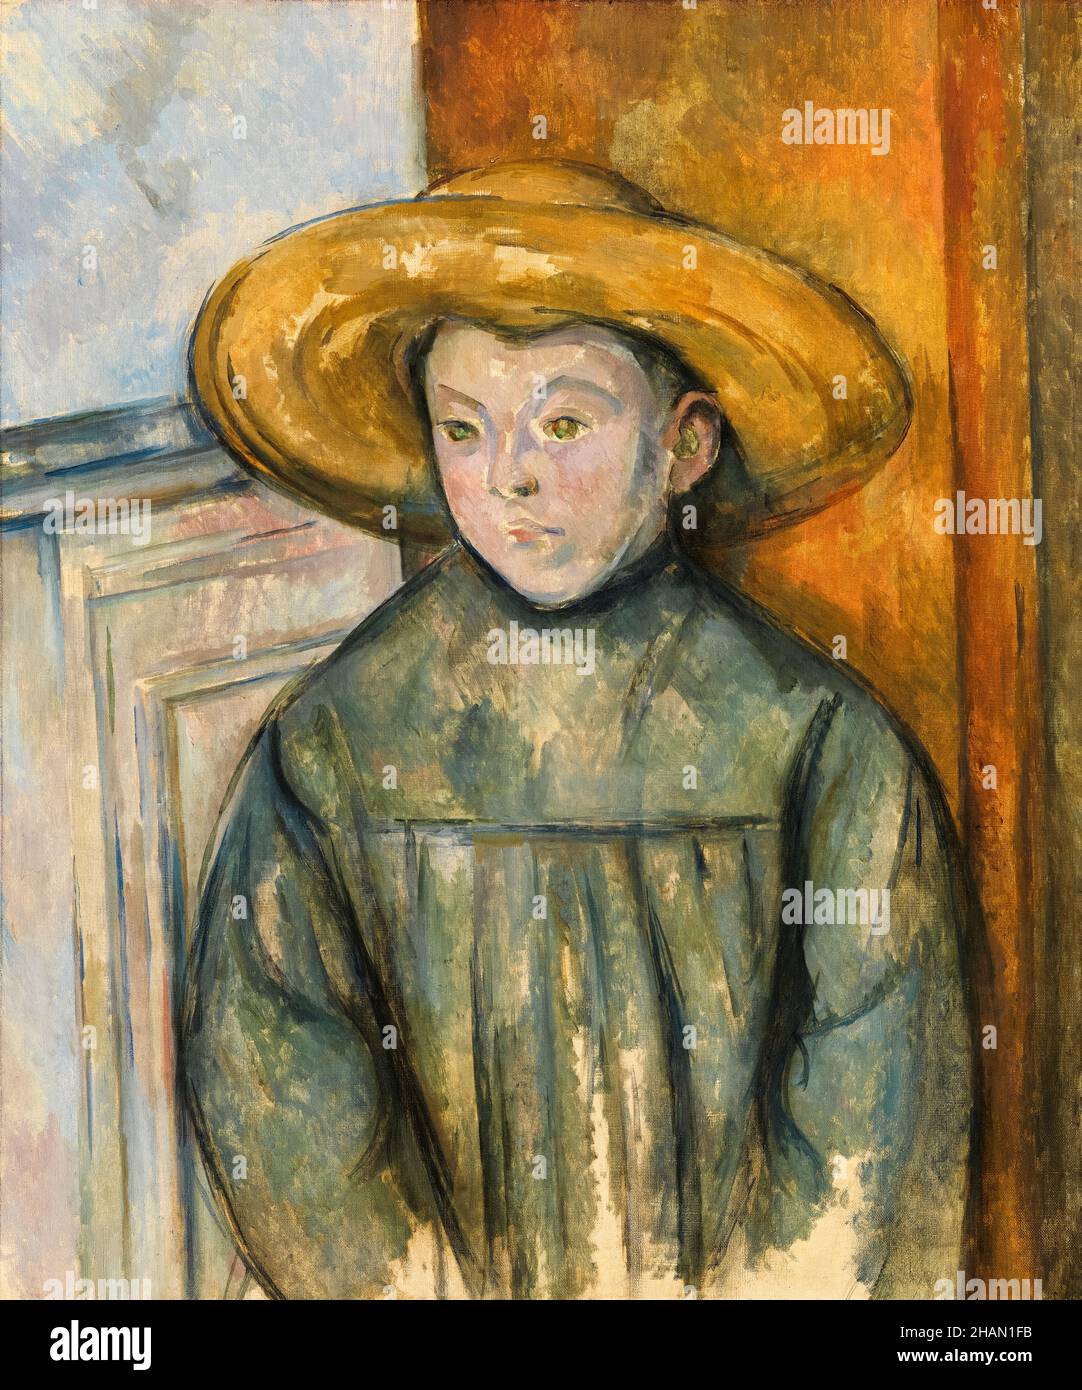 Paul Cezanne, garçon avec un chapeau de paille, portrait, 1896 Banque D'Images